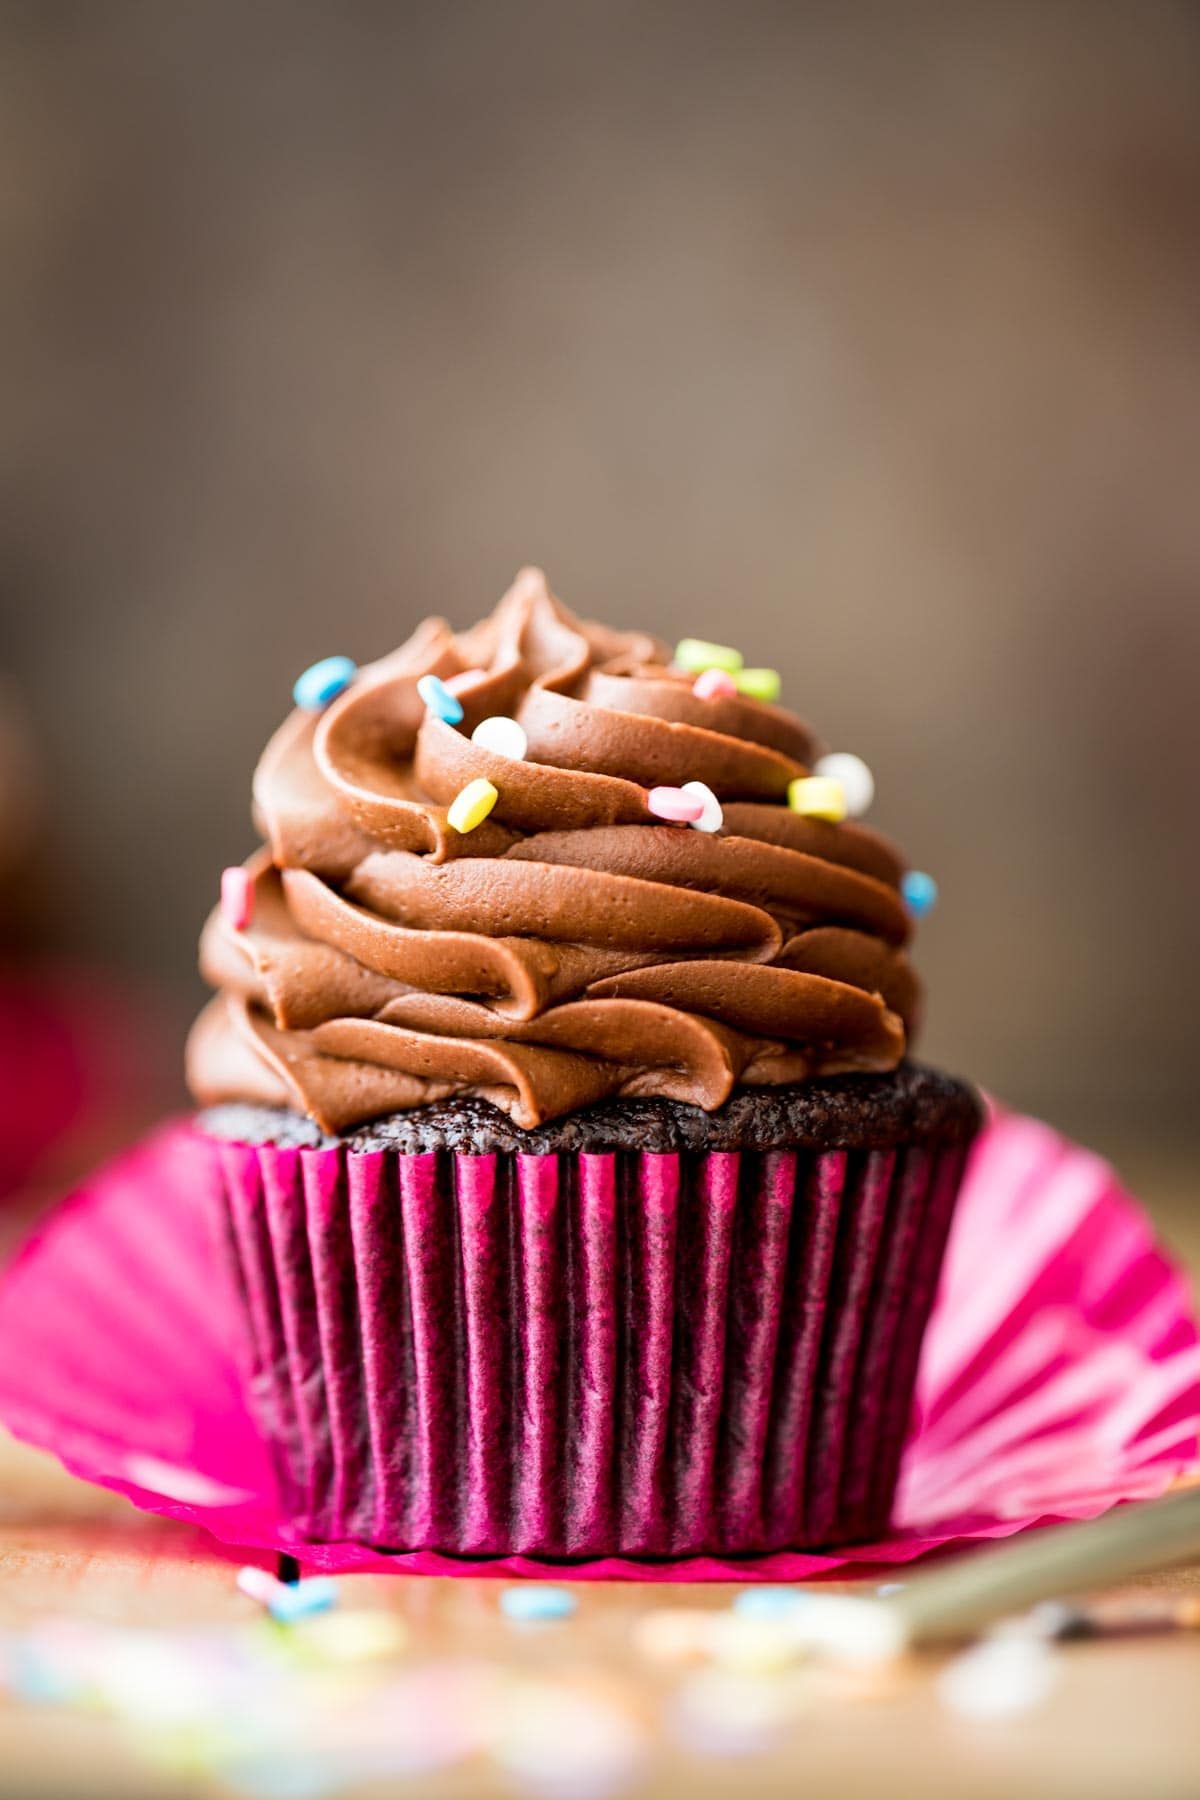 Best-Chocolate-Cupcakes-3-of-6.jpg